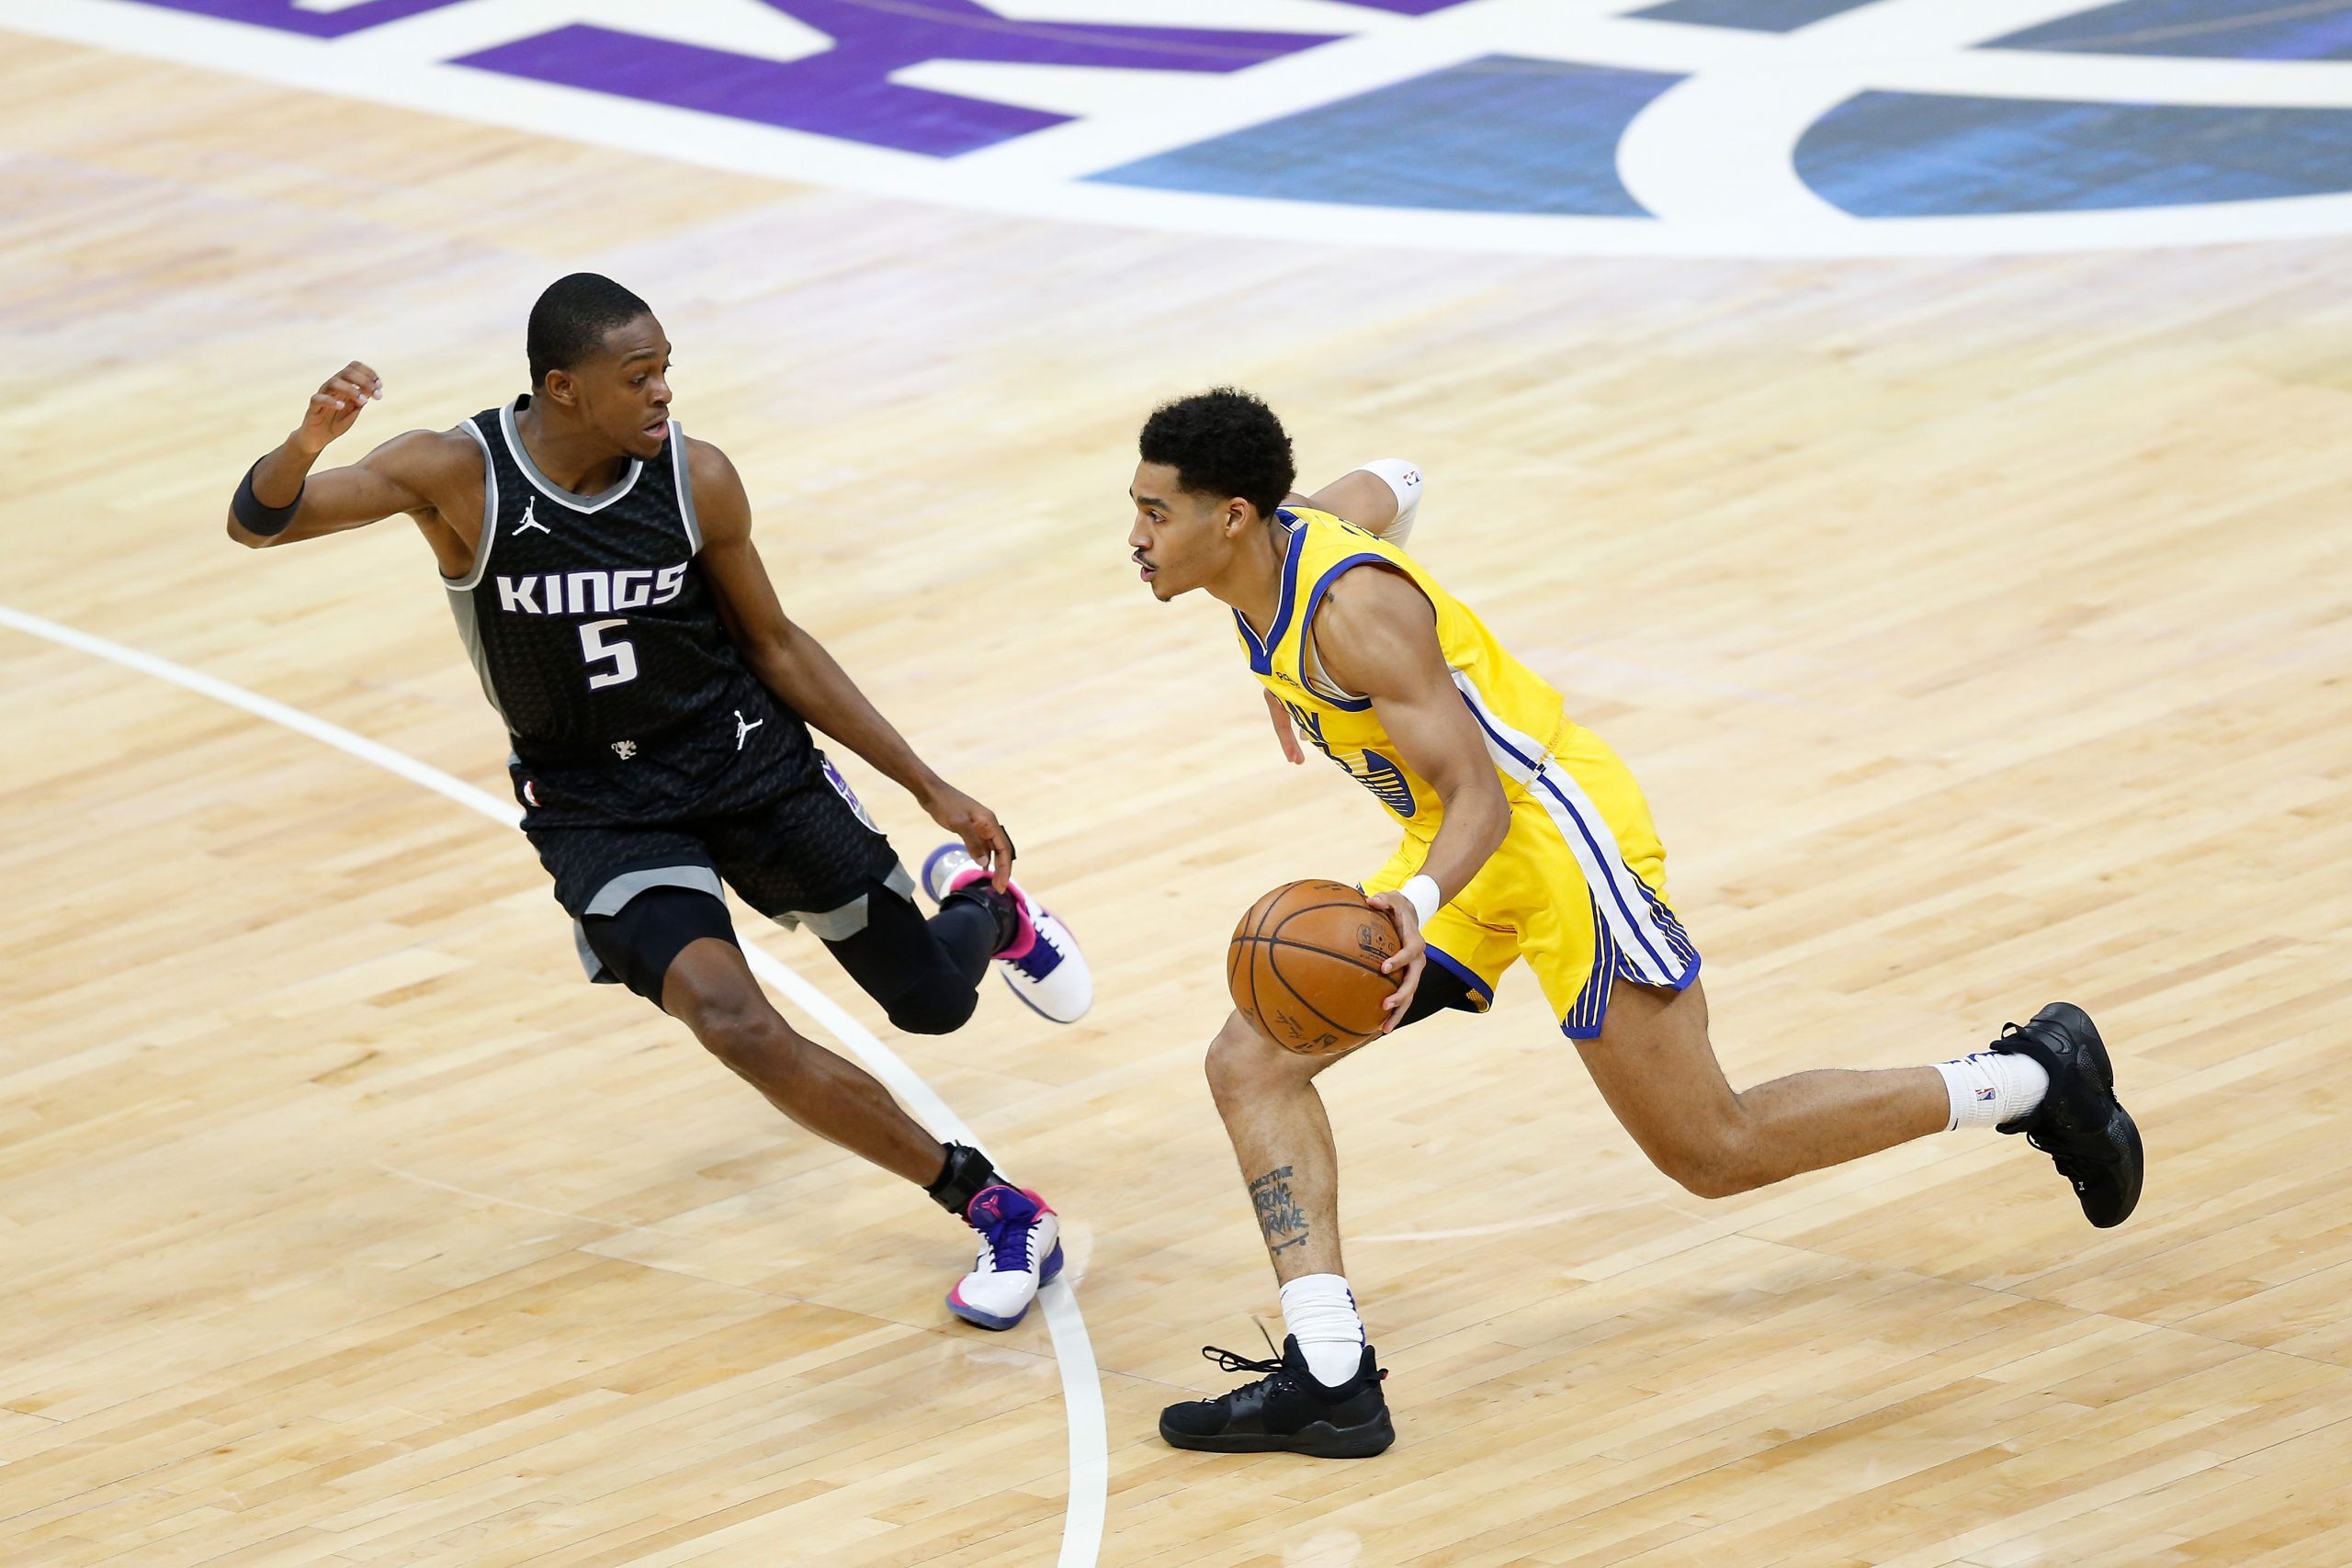 NBA: De'Aaron Fox leads Kings past host Pelicans